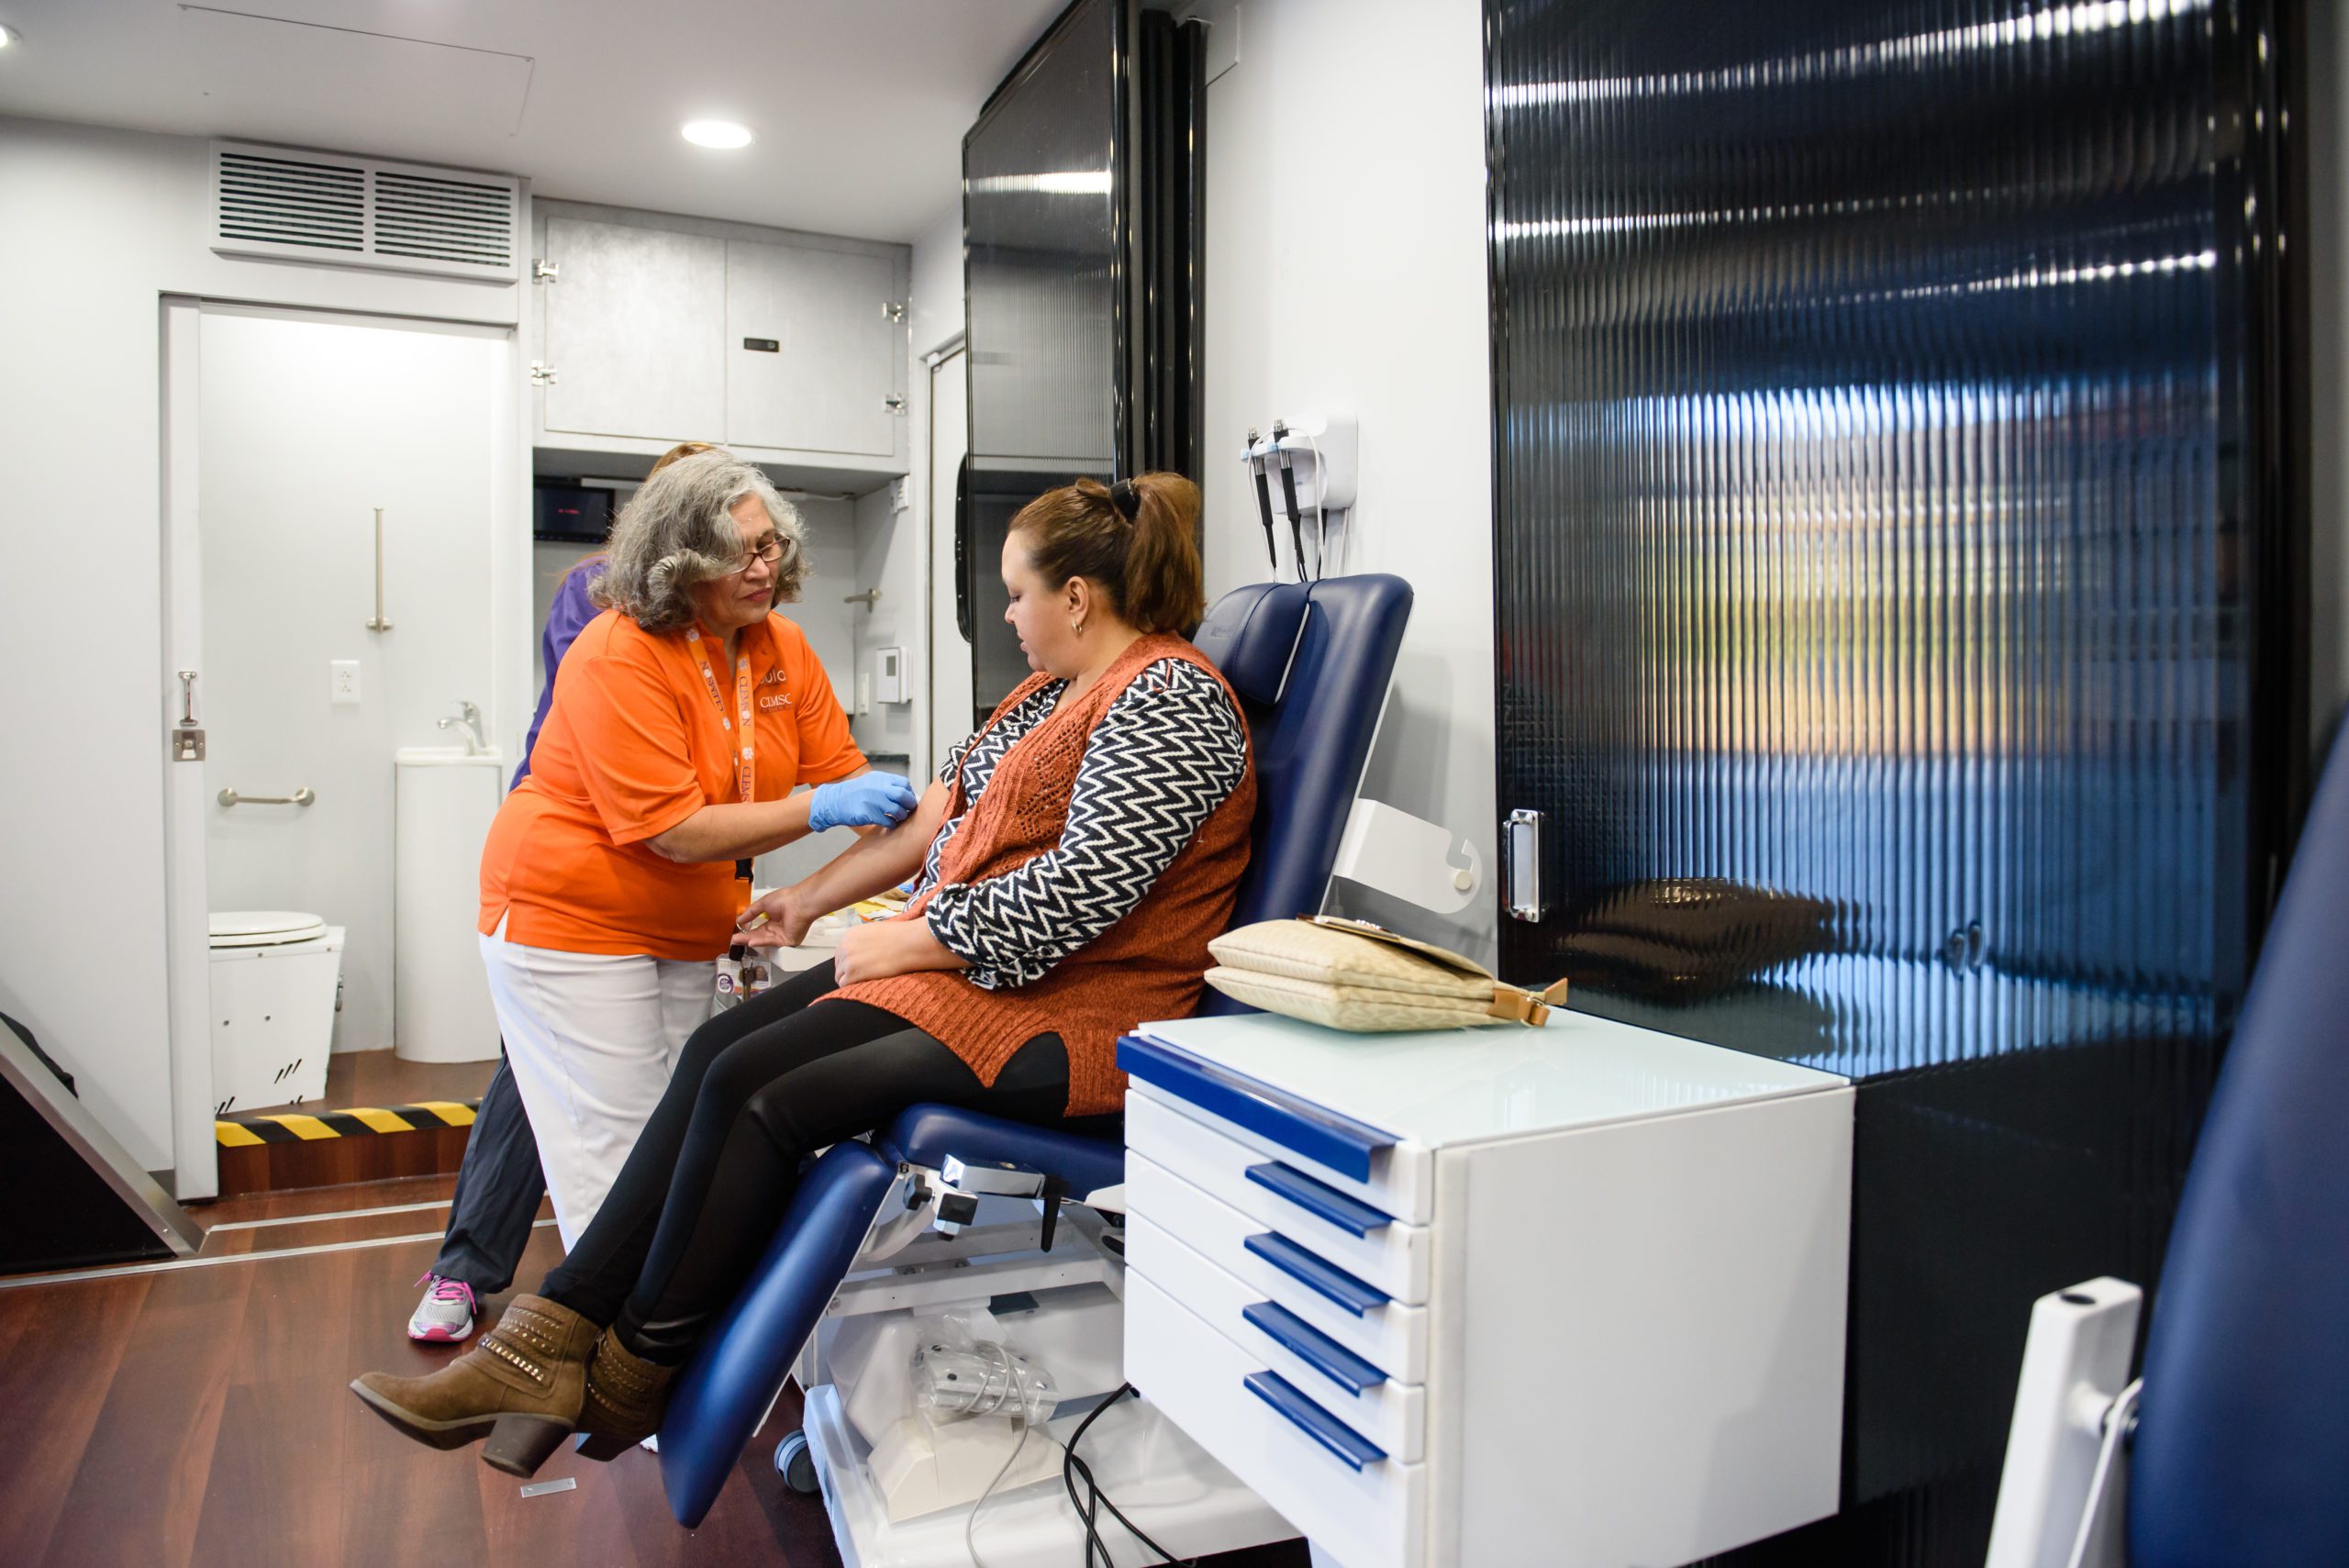 A Clemson-orange wearing nurse treats a patient inside a mobile health unit.